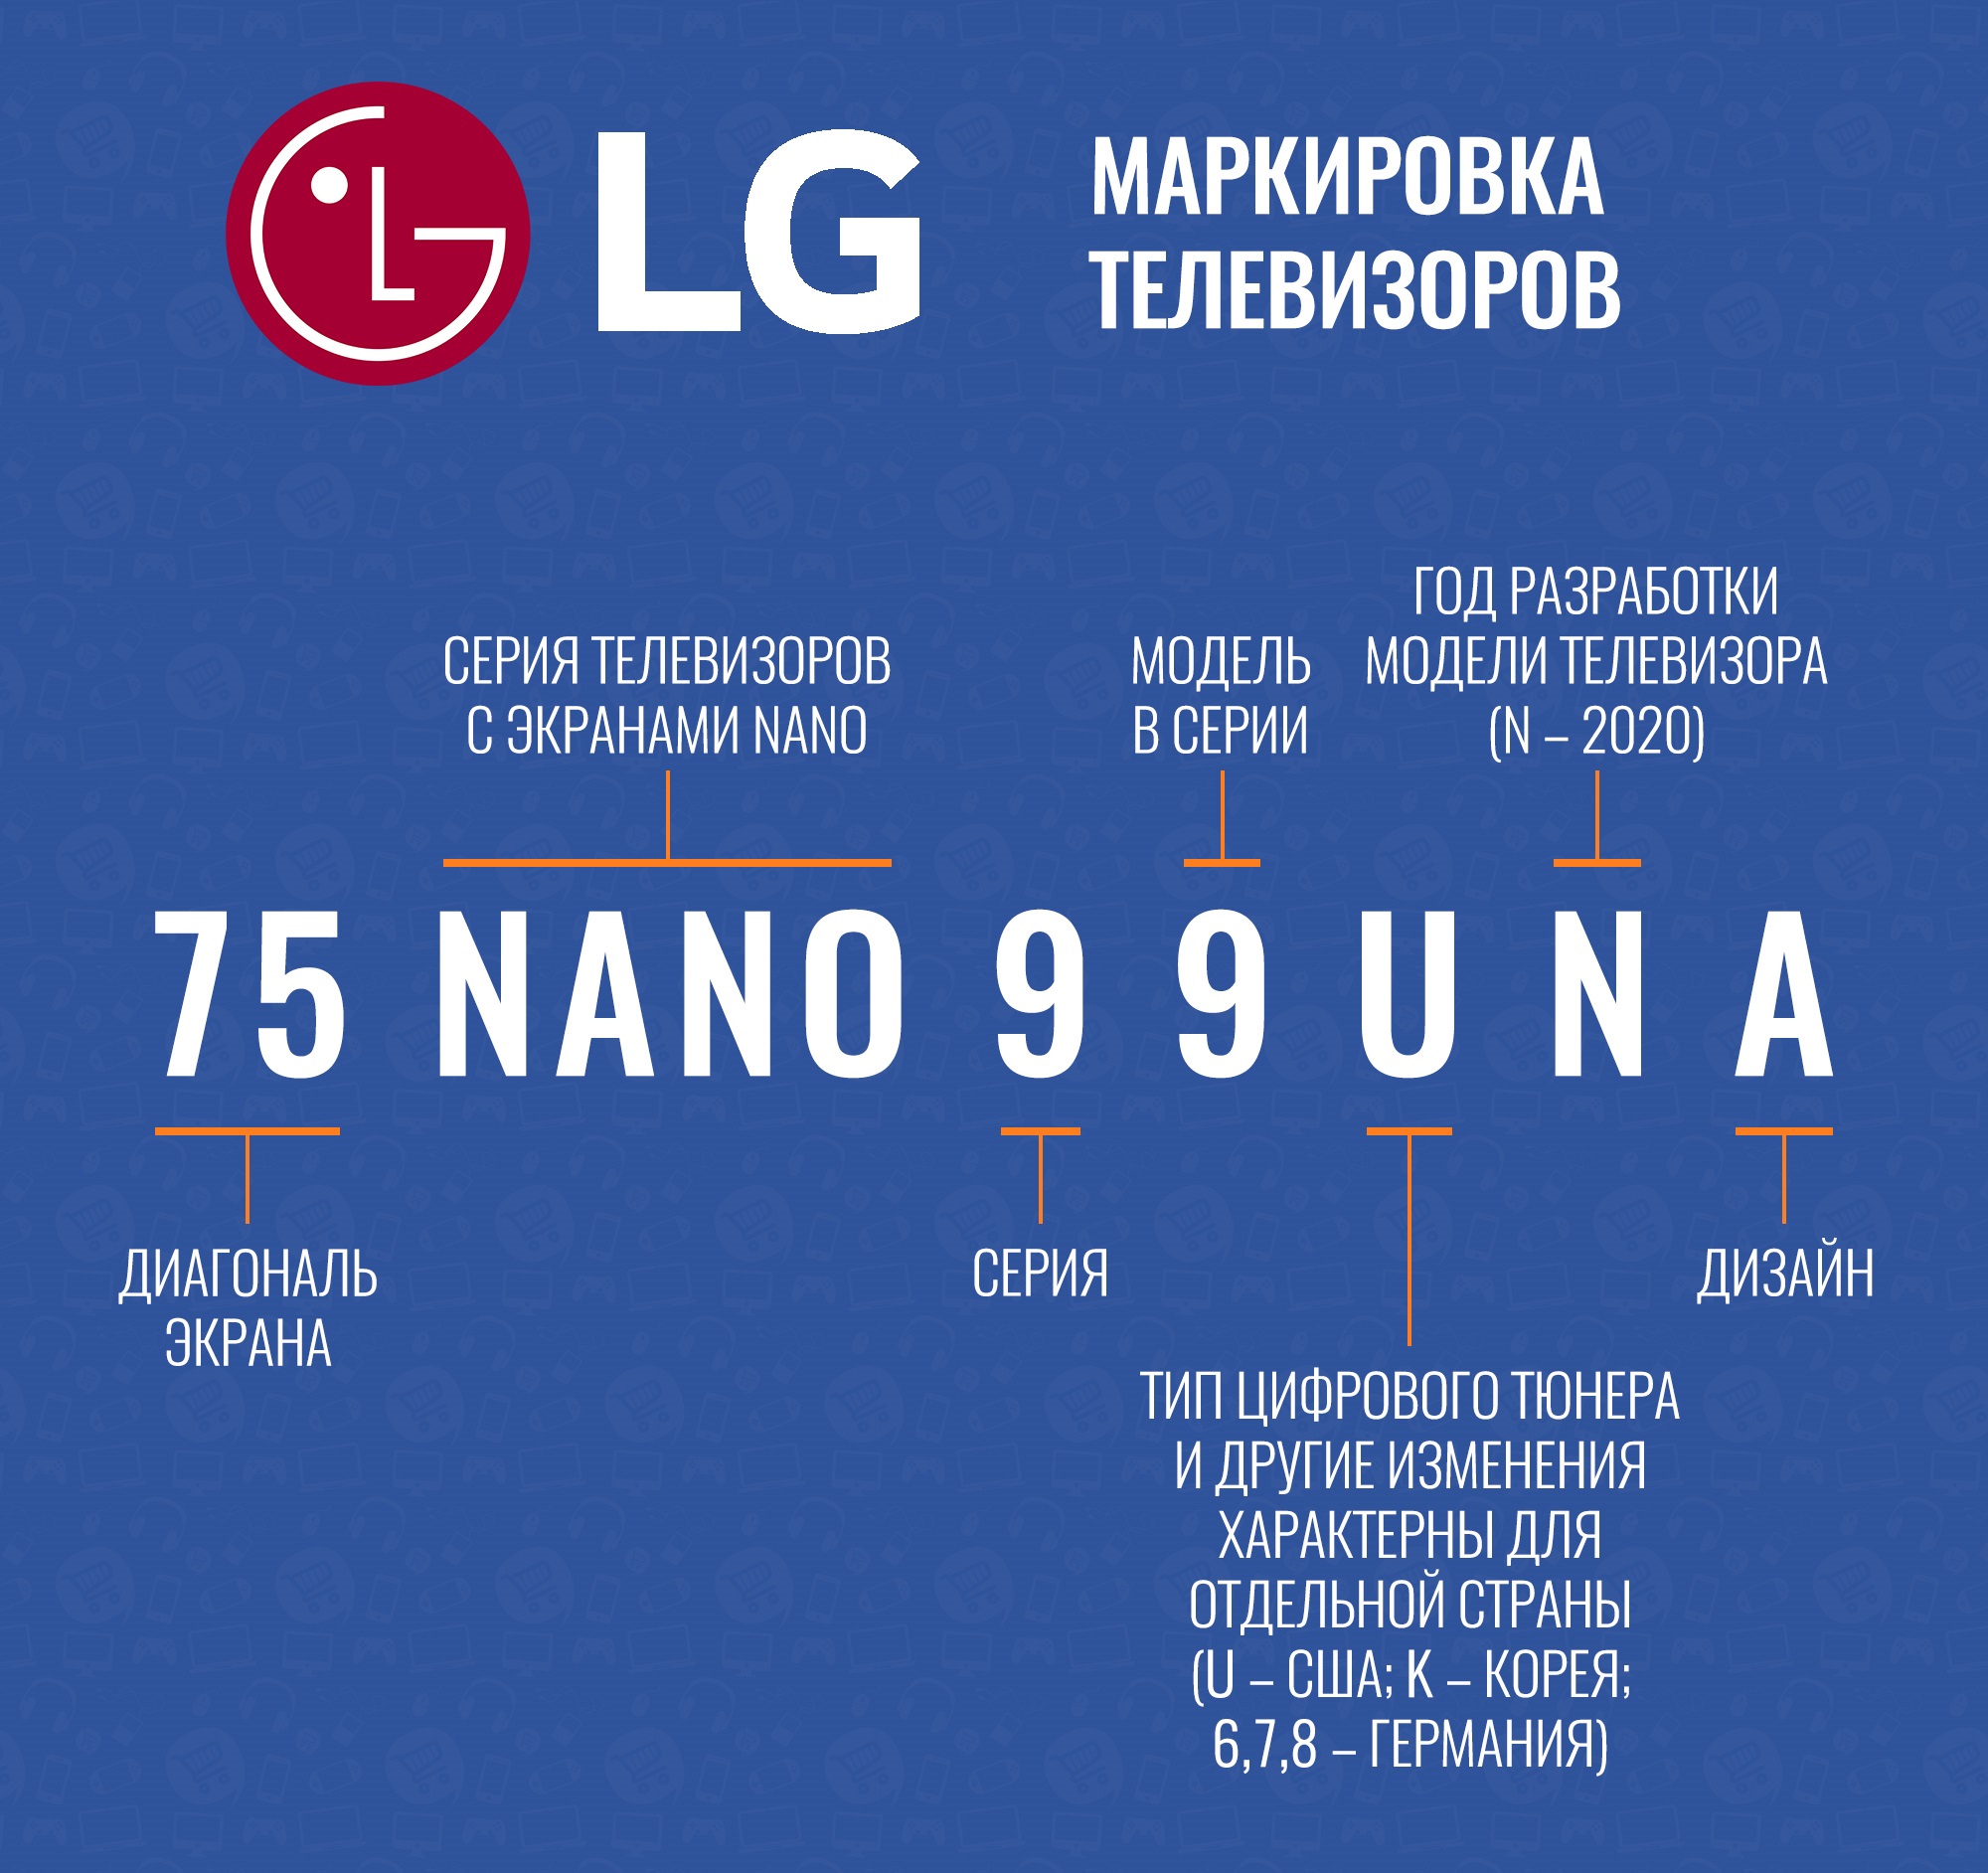 Название телевизоров lg. Расшифровка моделей телевизоров LG 2021. Расшифровка маркировки телевизоров LG 2020. Расшифровка моделей телевизоров LG Nano. Маркировка телевизоров LG расшифровка букв модели.